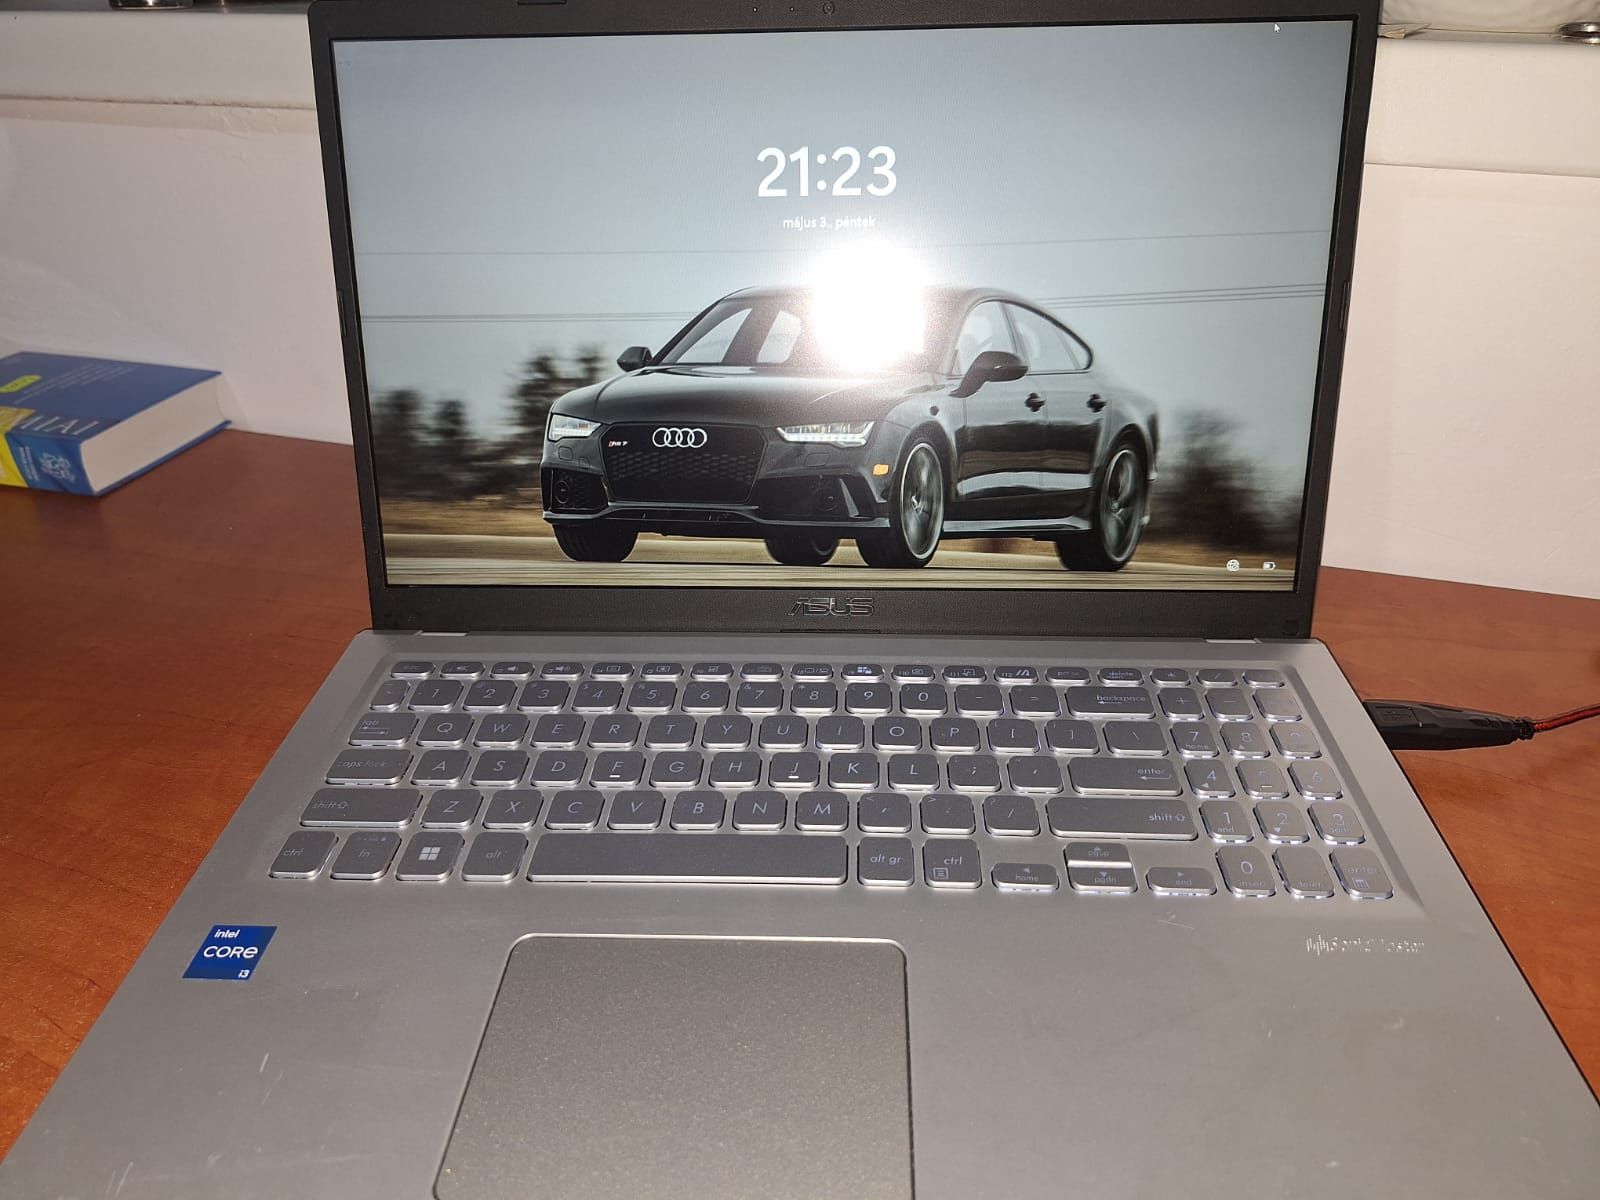 Laptop Asus X515EA